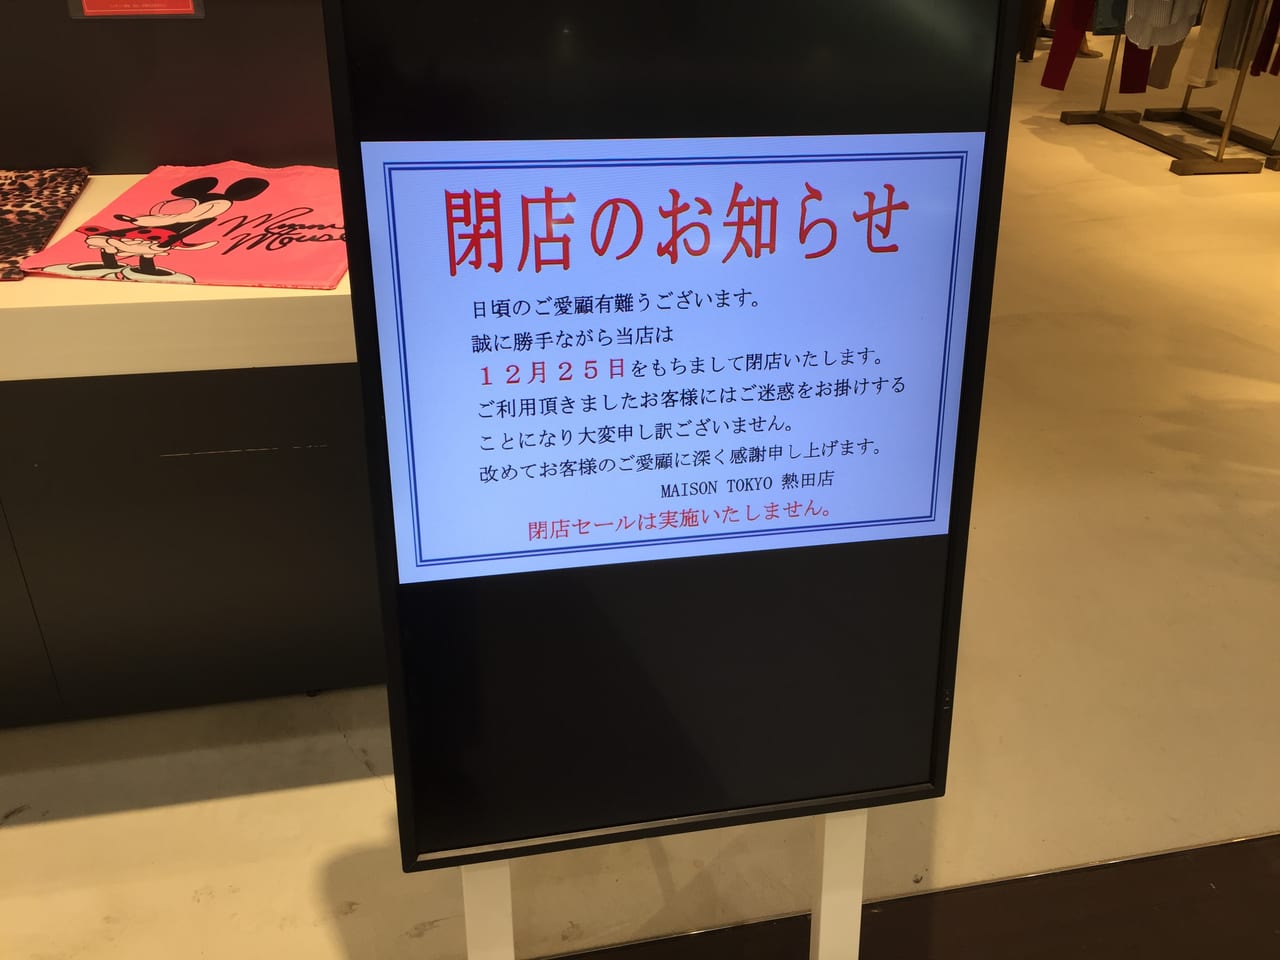 MAISON TOKYO熱田店閉店のお知らせ